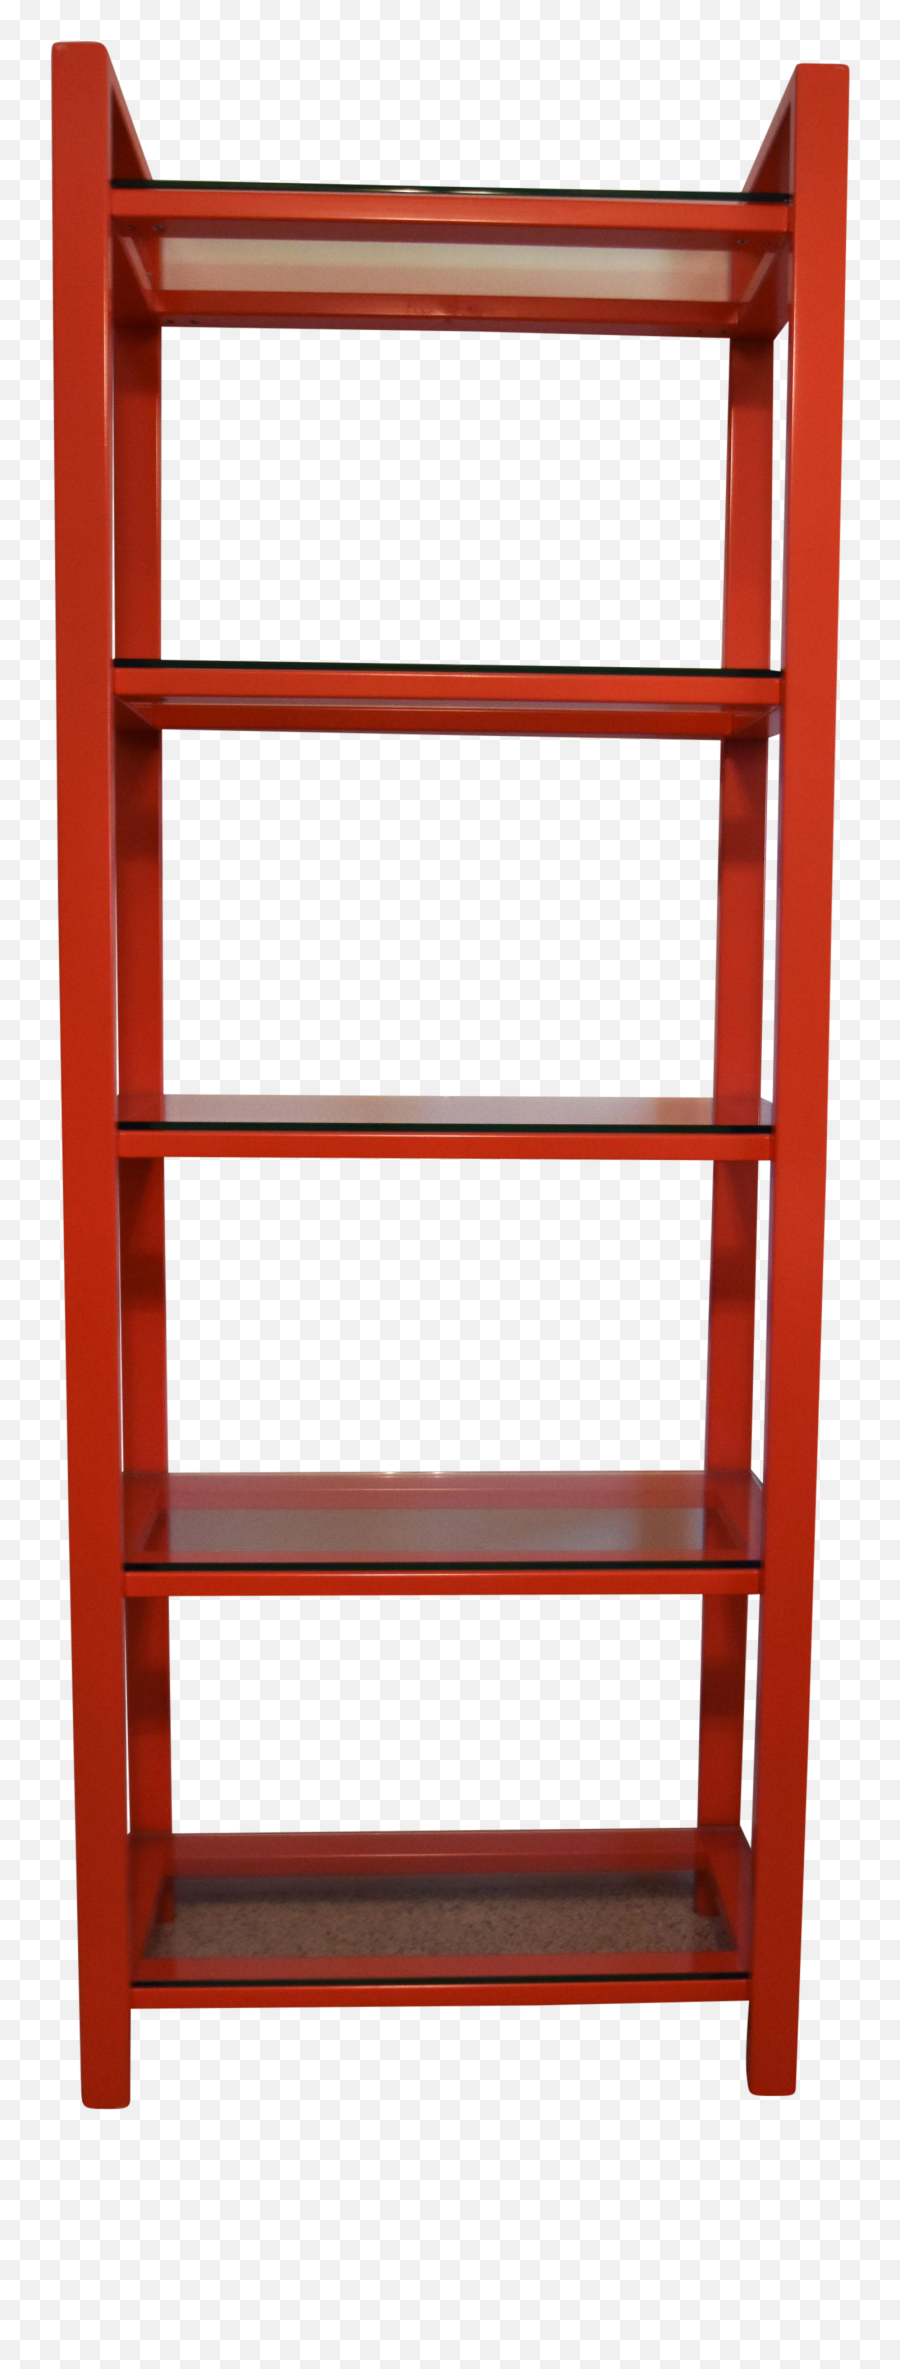 Red Metal Bookshelf With Glass Shelves - Red Metal Book Shelf Emoji,Transparent Bookshelf